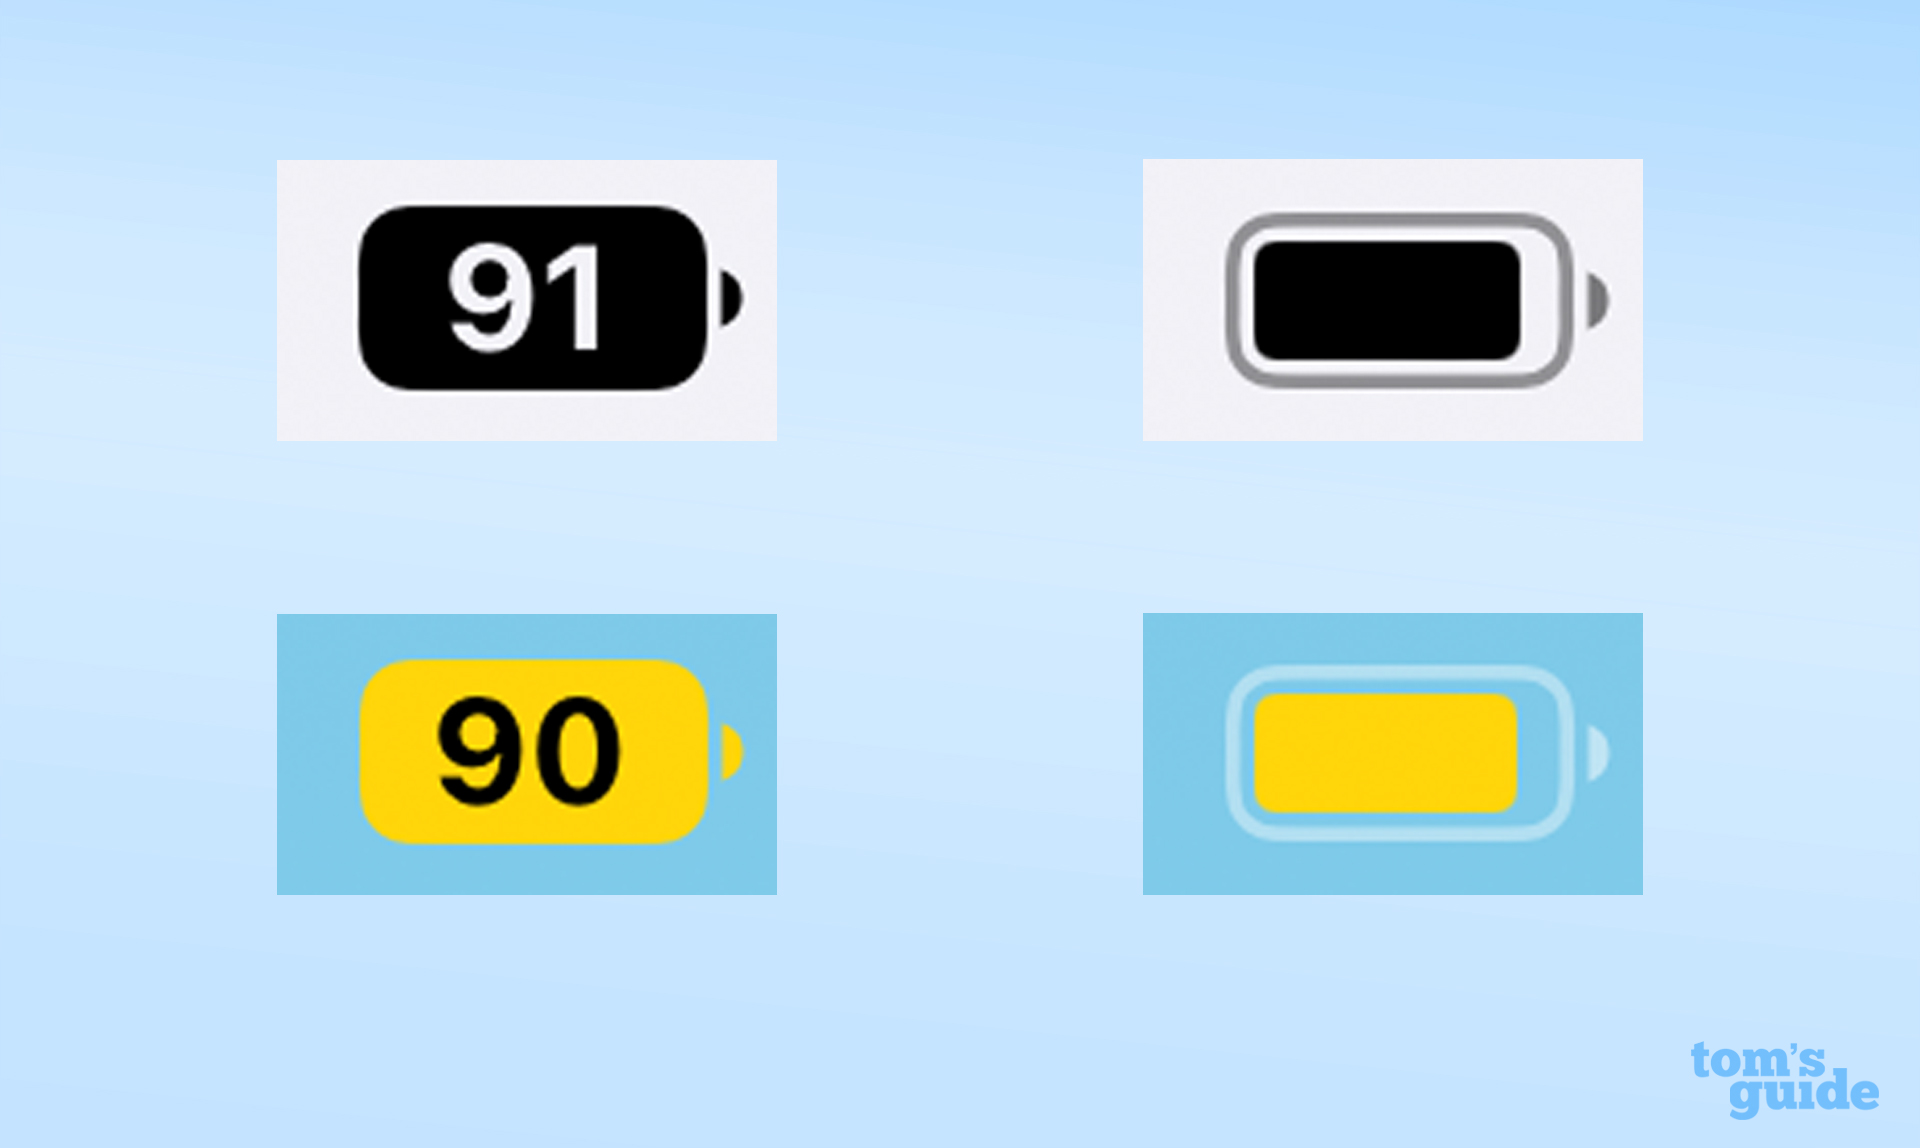 Параметры индикатора батареи в iOS 16 в обычном и низком энергопотреблении